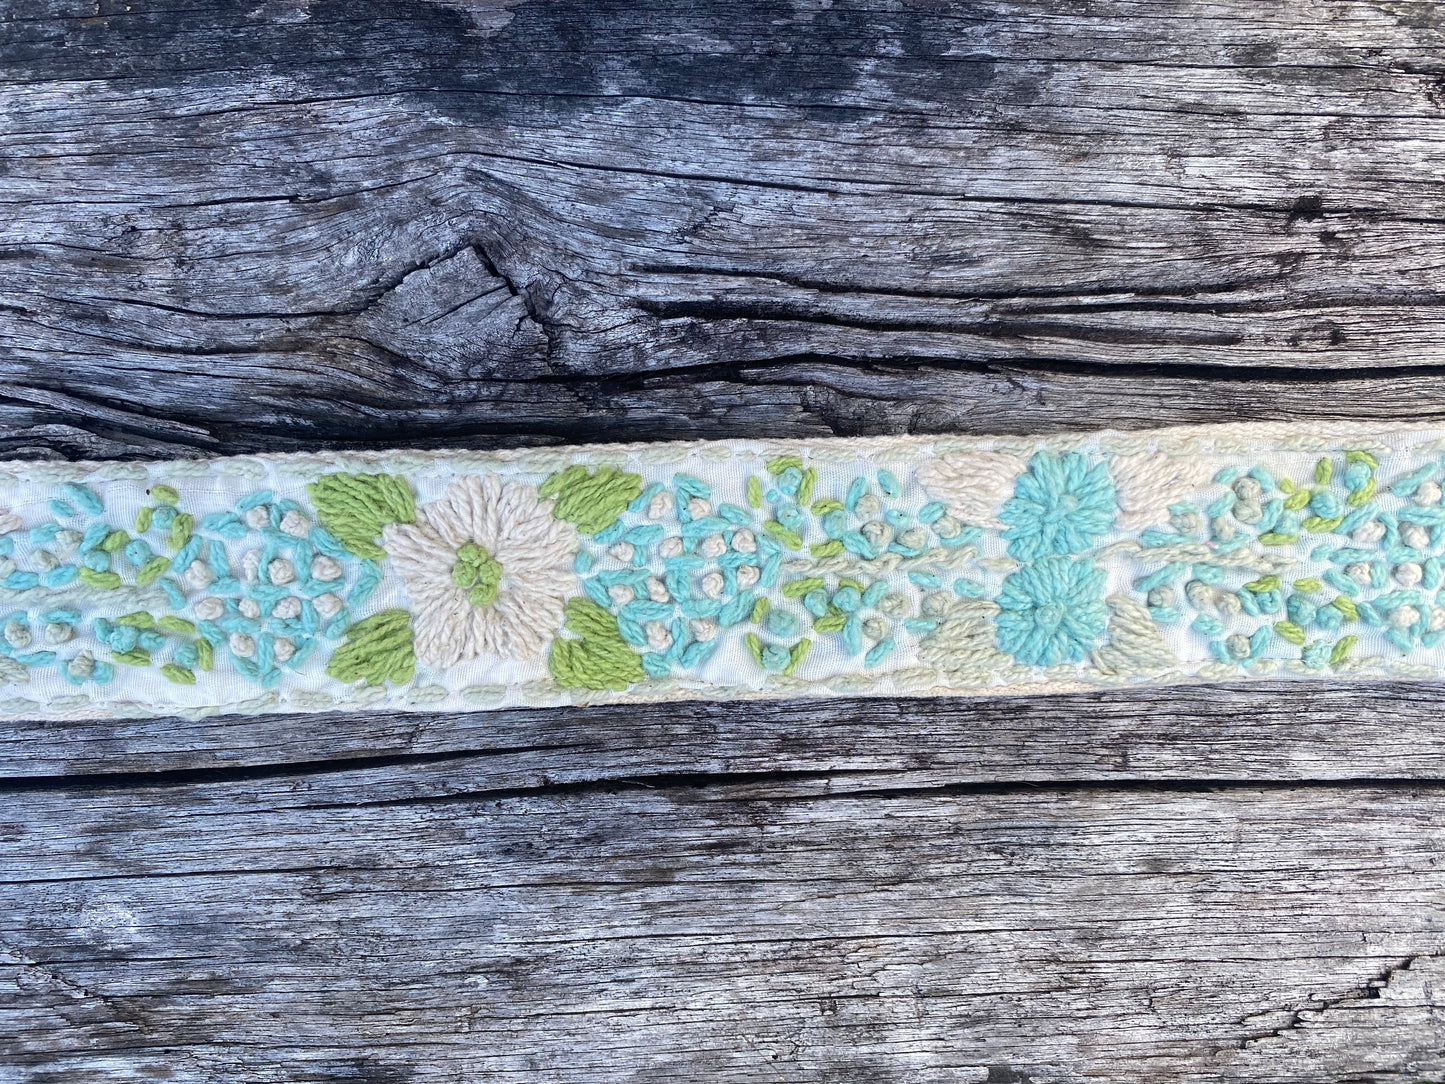 Kiara Embroidered Belt